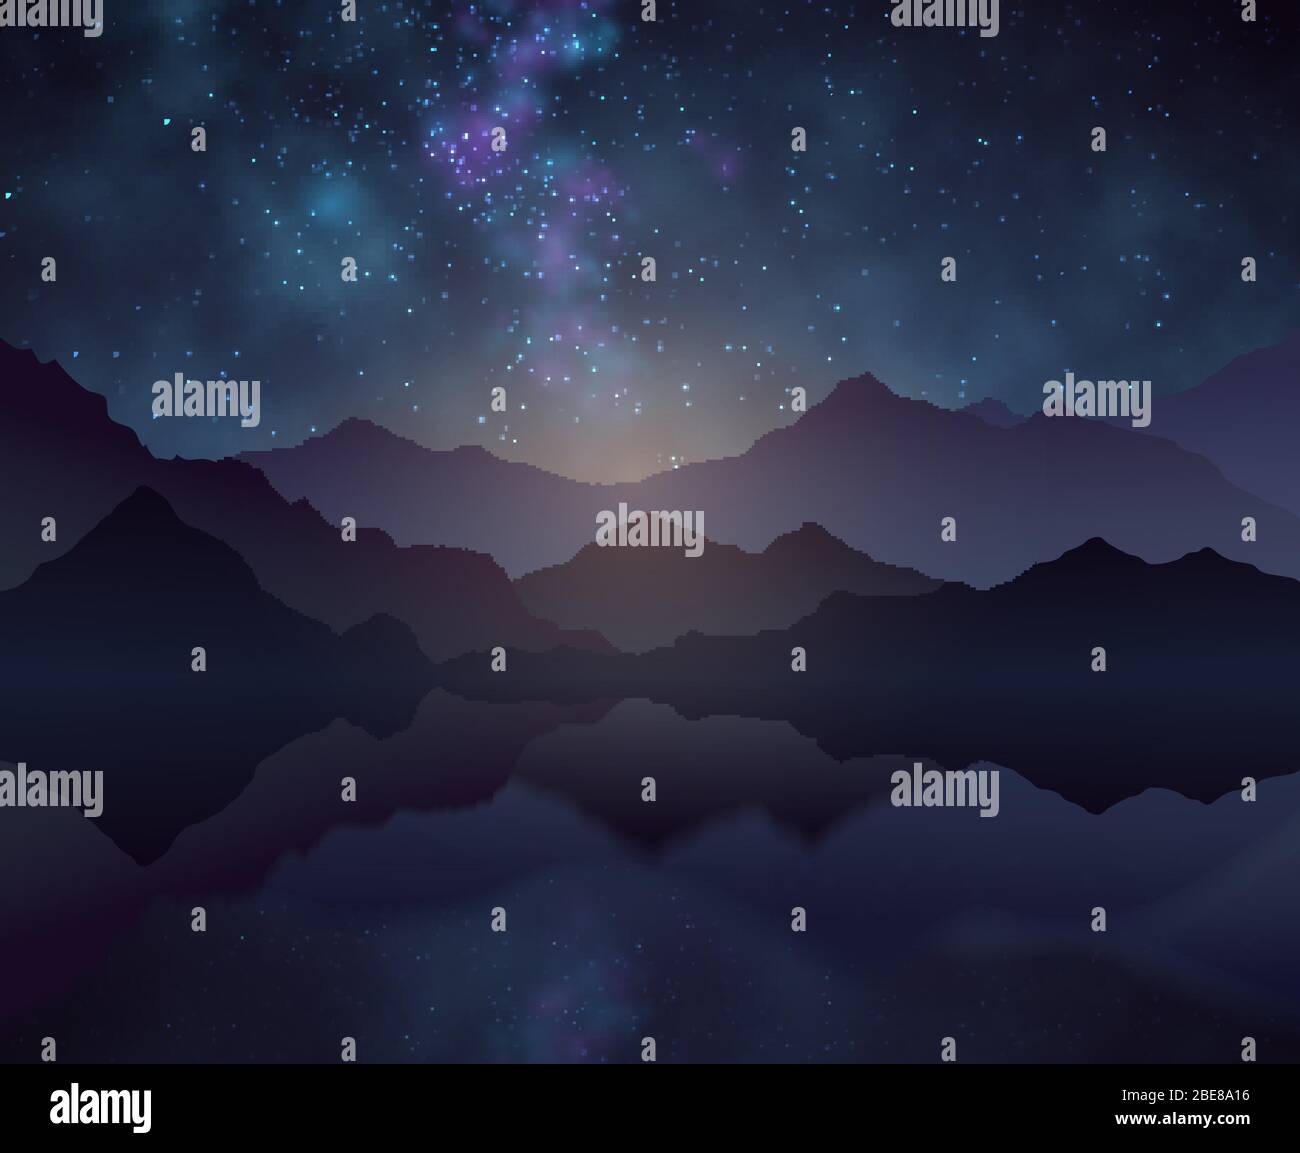 Natur Nacht Vektor Hintergrund mit Sternenhimmel, Berge und Wasseroberfläche. Landschaft und Berg mit Kosmos Sternenhimmel Illustration Stock Vektor